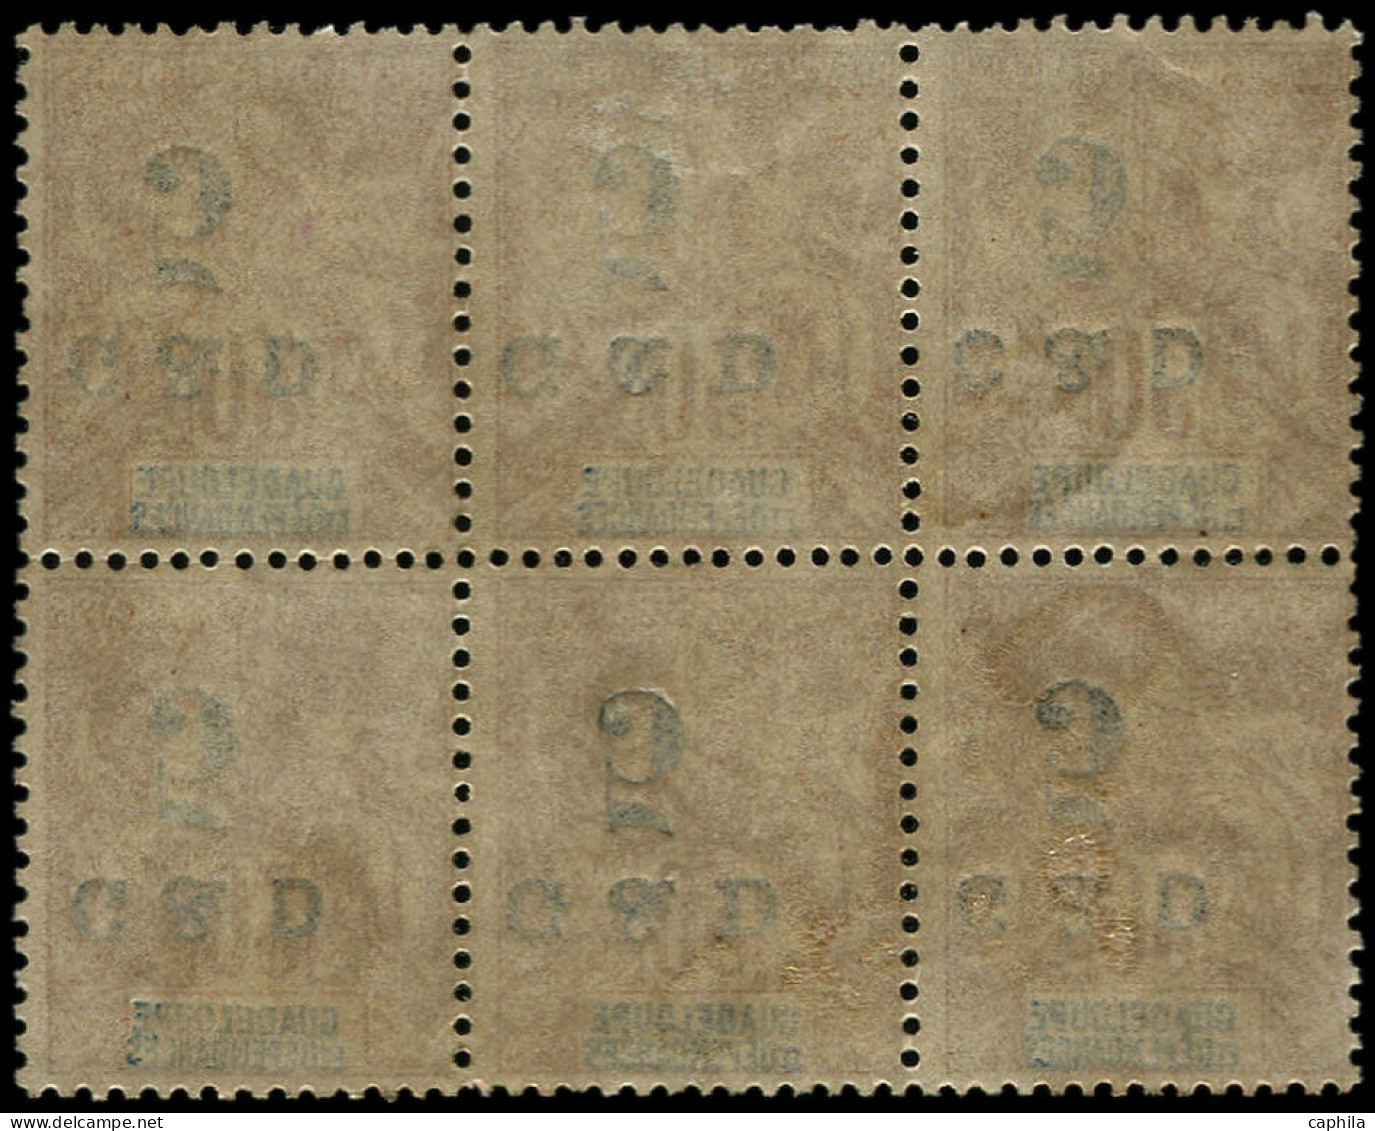 (*) GUADELOUPE - Poste - 45a, Bloc De 6 Surcharge Renversée Case 16/18 + 26/28 Dont 45c + 45Ca - Unused Stamps